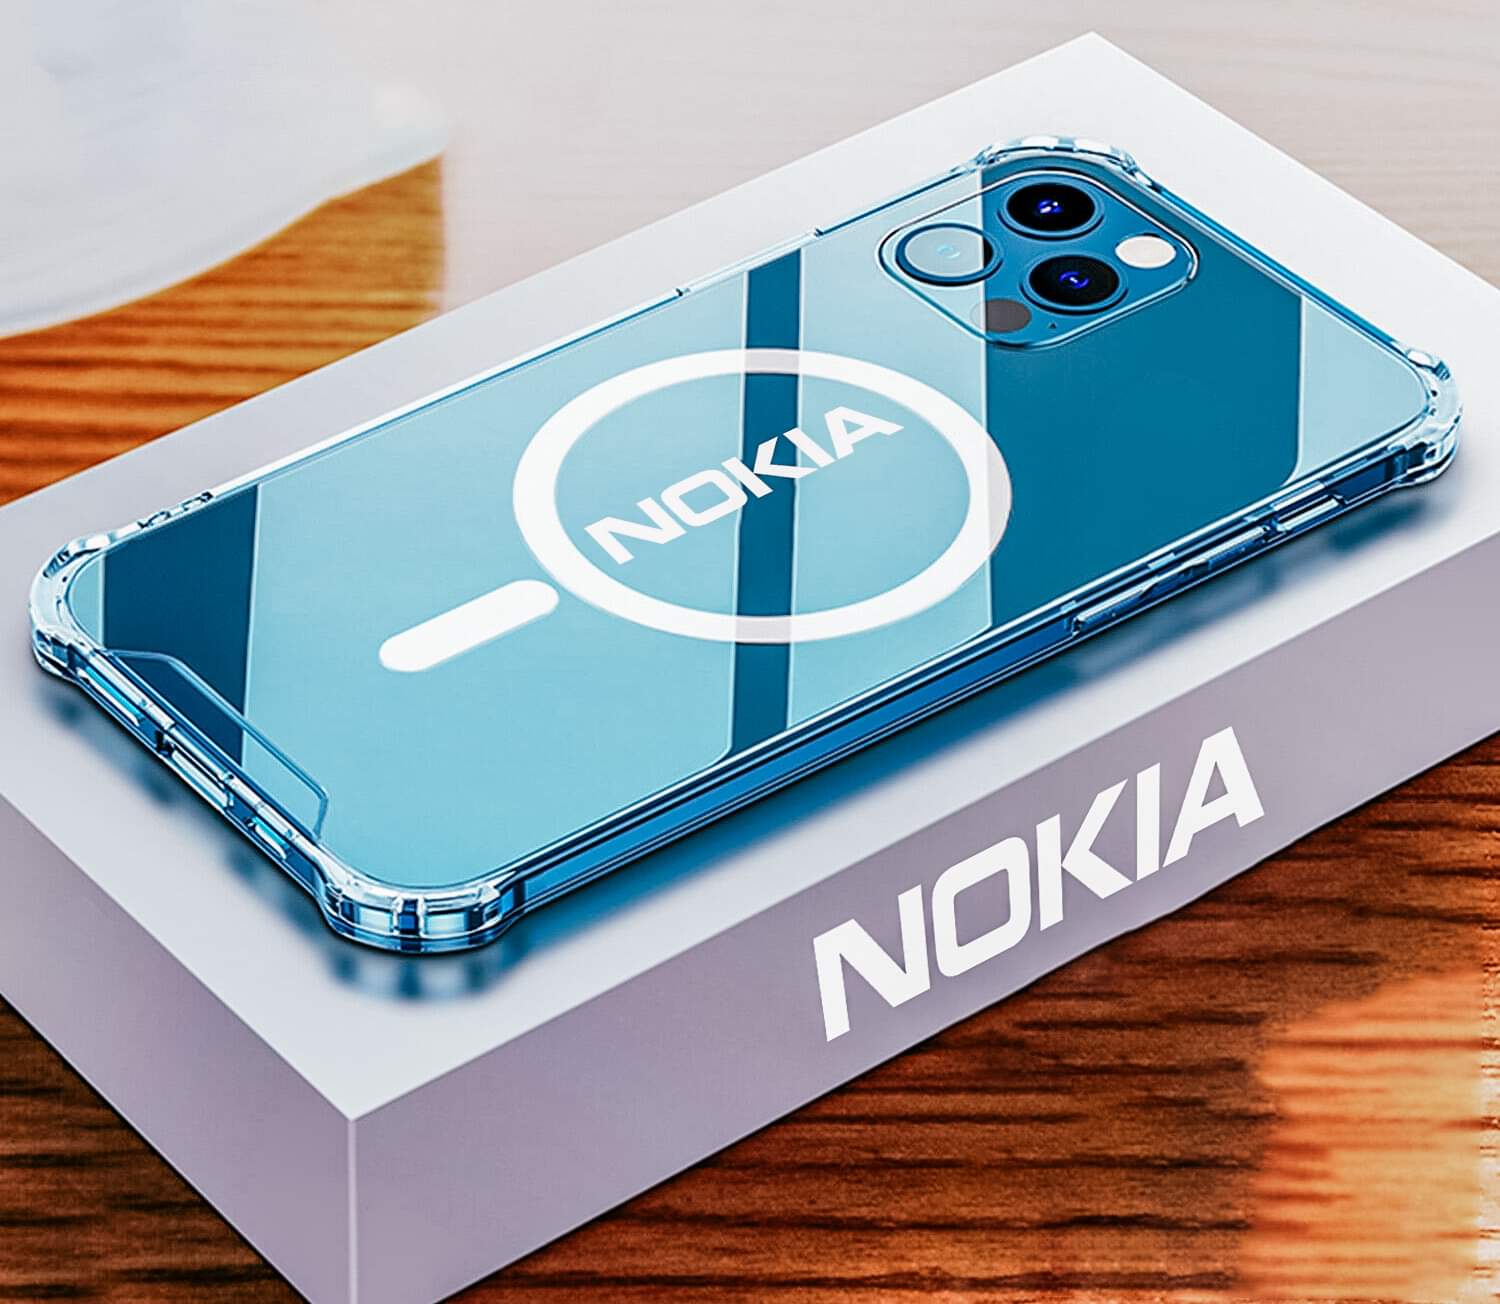 Nokia play 2 max 2021 price in ksa